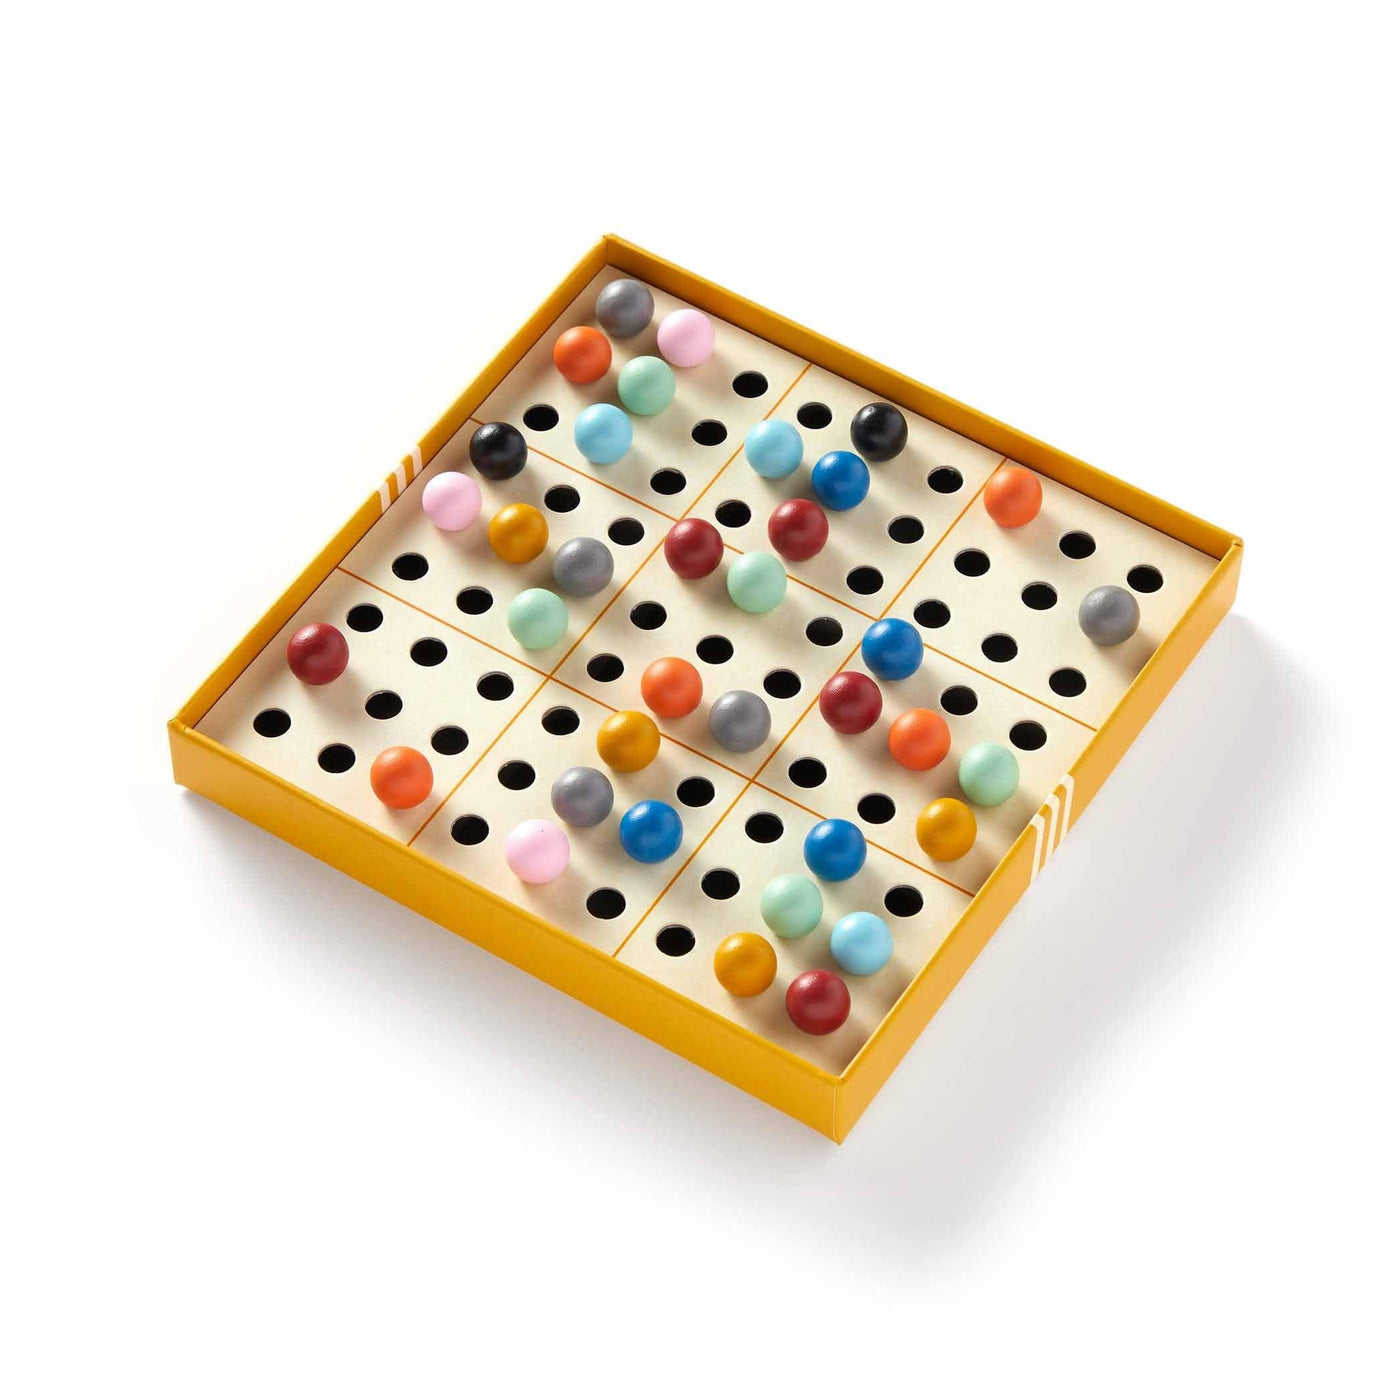 Brass Monkey réinvente le Sudoku avec des boules de bois colorées. Une explosion visuelle dans le monde des chiffres, offrant une expérience ludique et captivante pour les esprits en quête de défis.